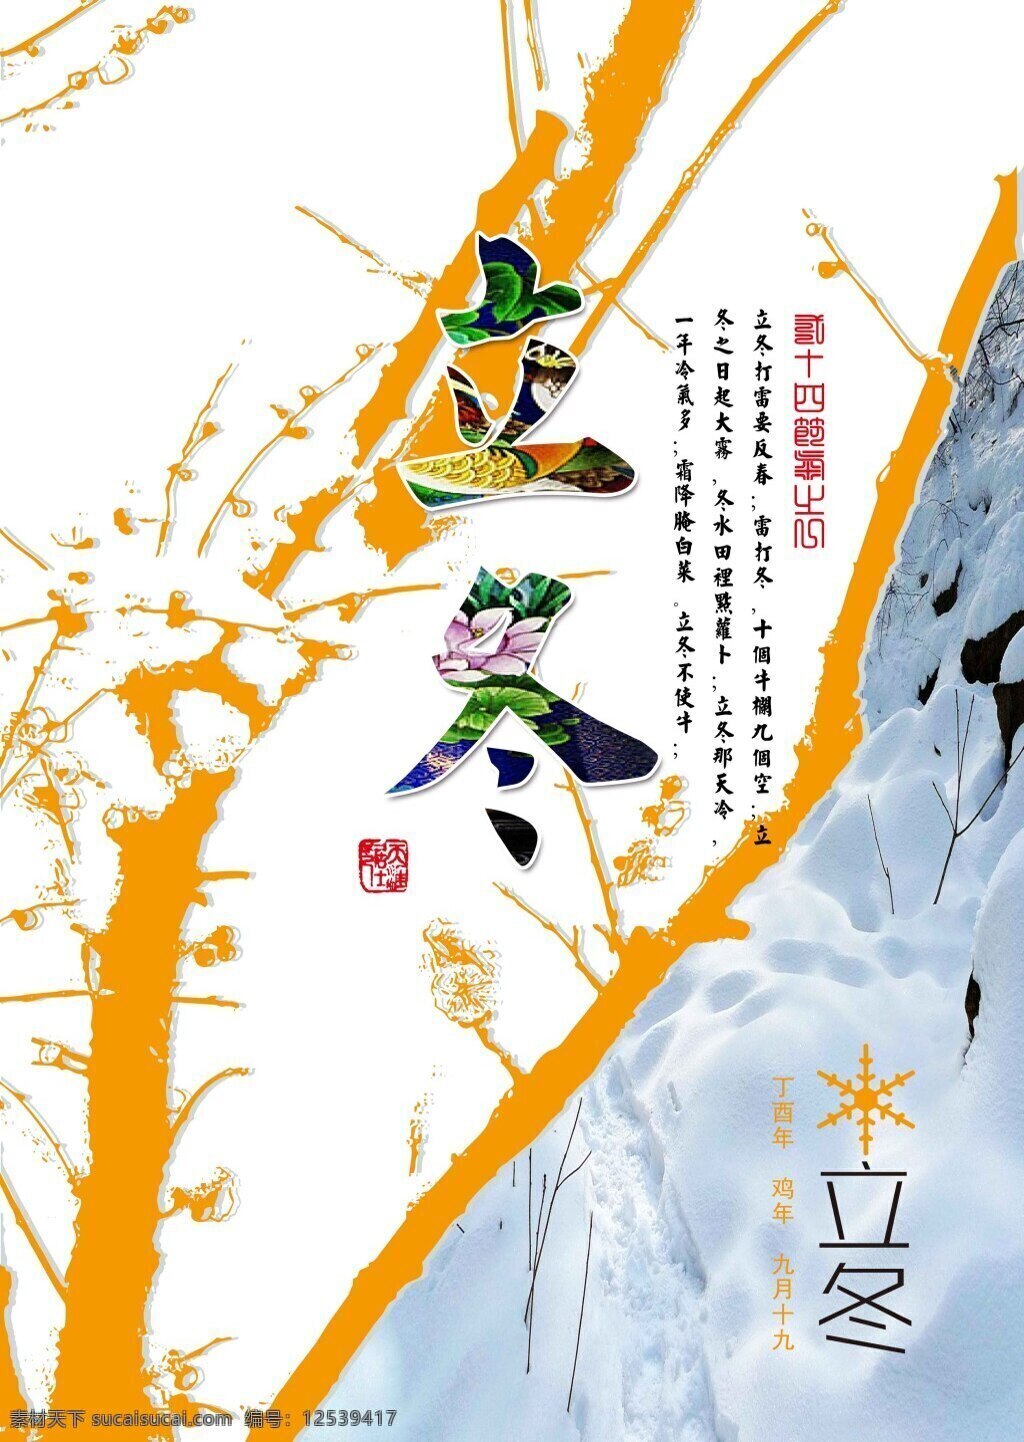 二十四节气 立冬 海报 中国 节气 寒梅